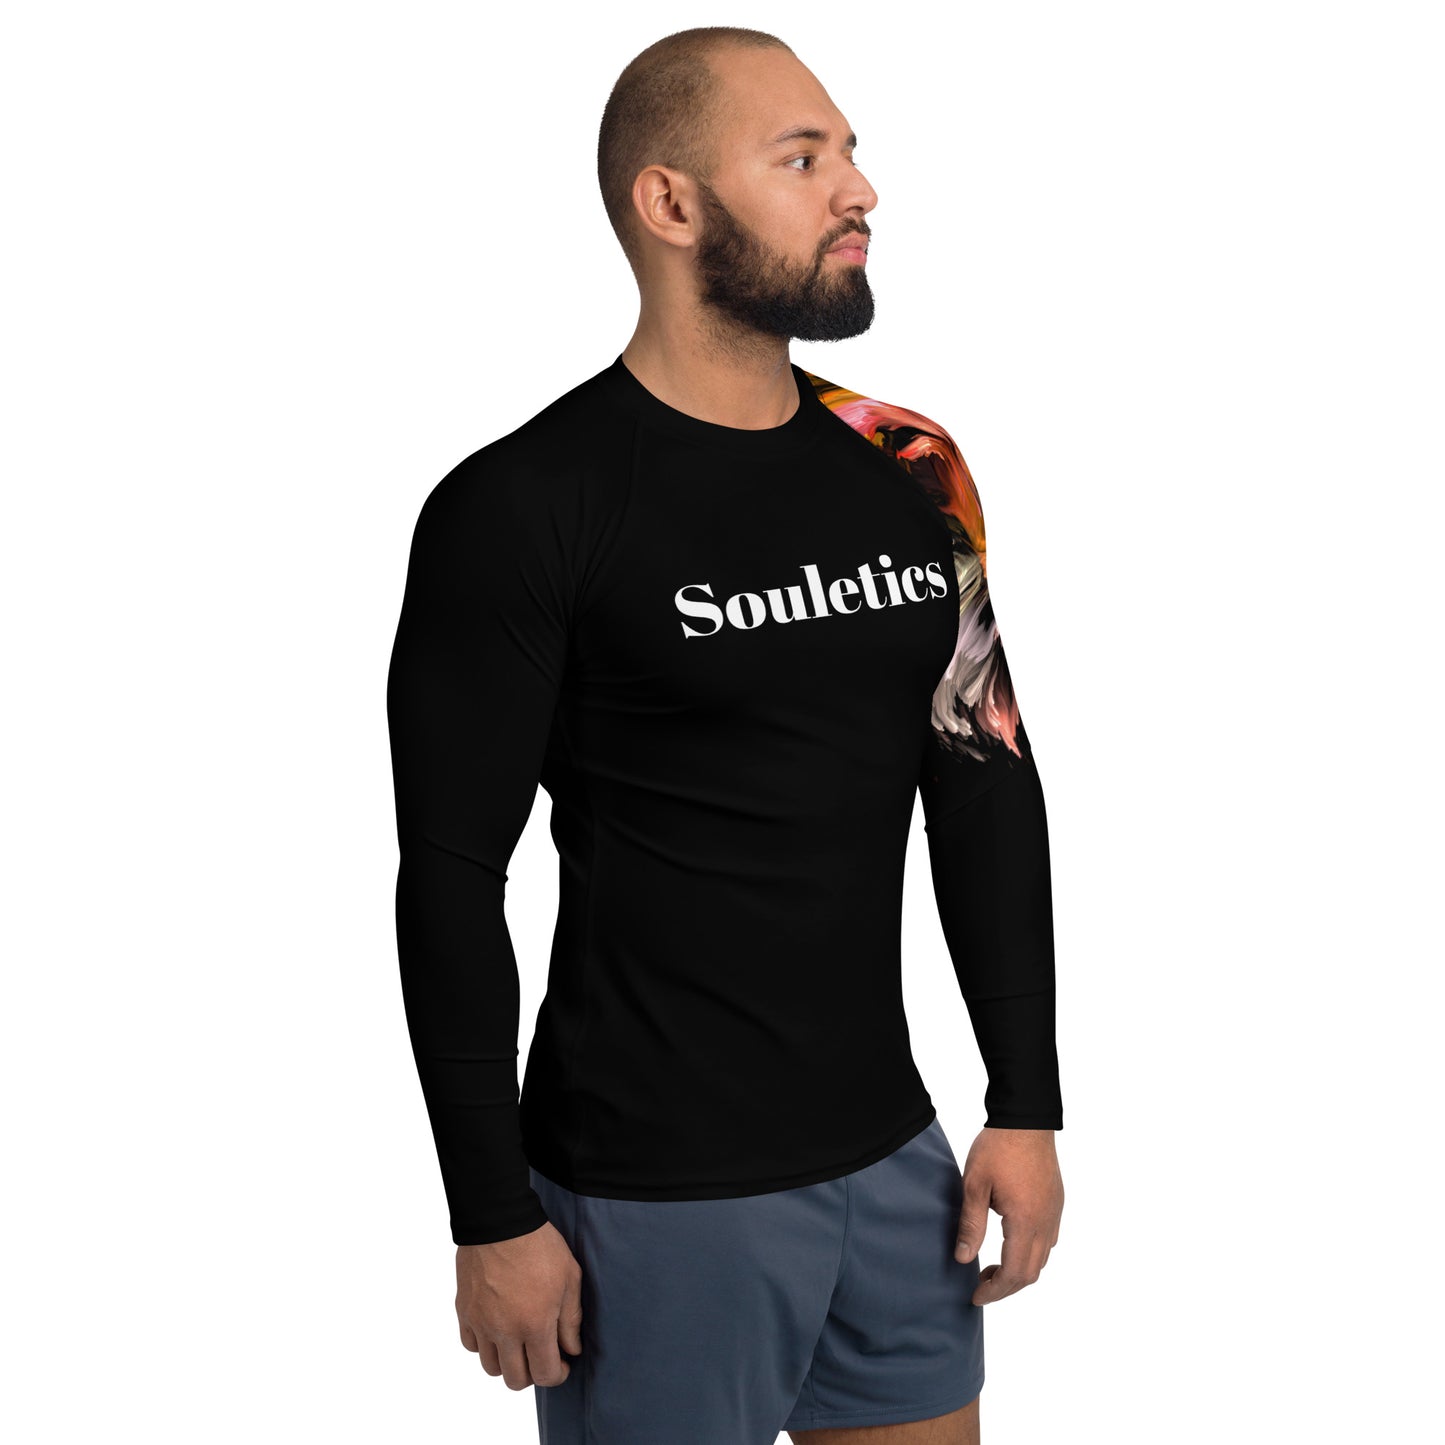 Souletics® "Looking Good In Black" Race Jersey